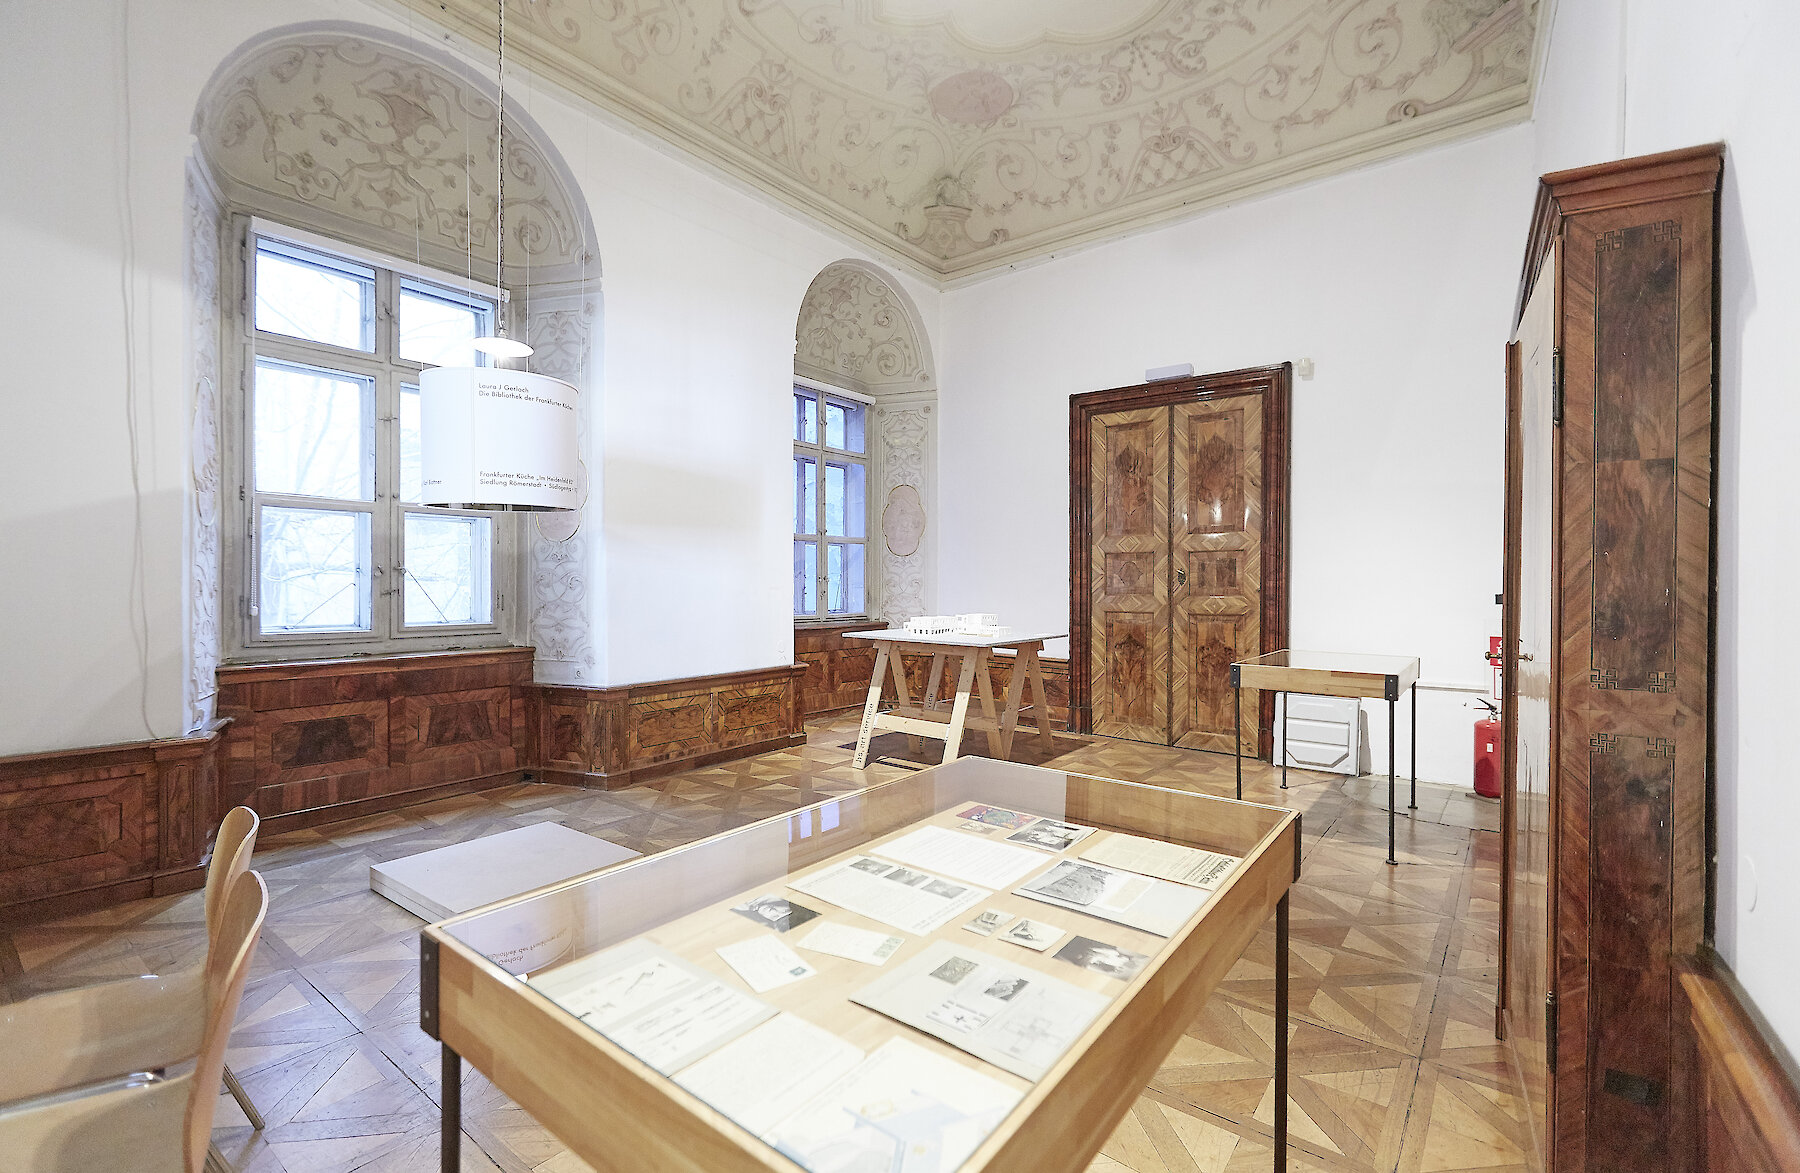 Birgit&Peter Kainz, Kunstsammlung und Archiv, Universität für angewandte Kunst Wien